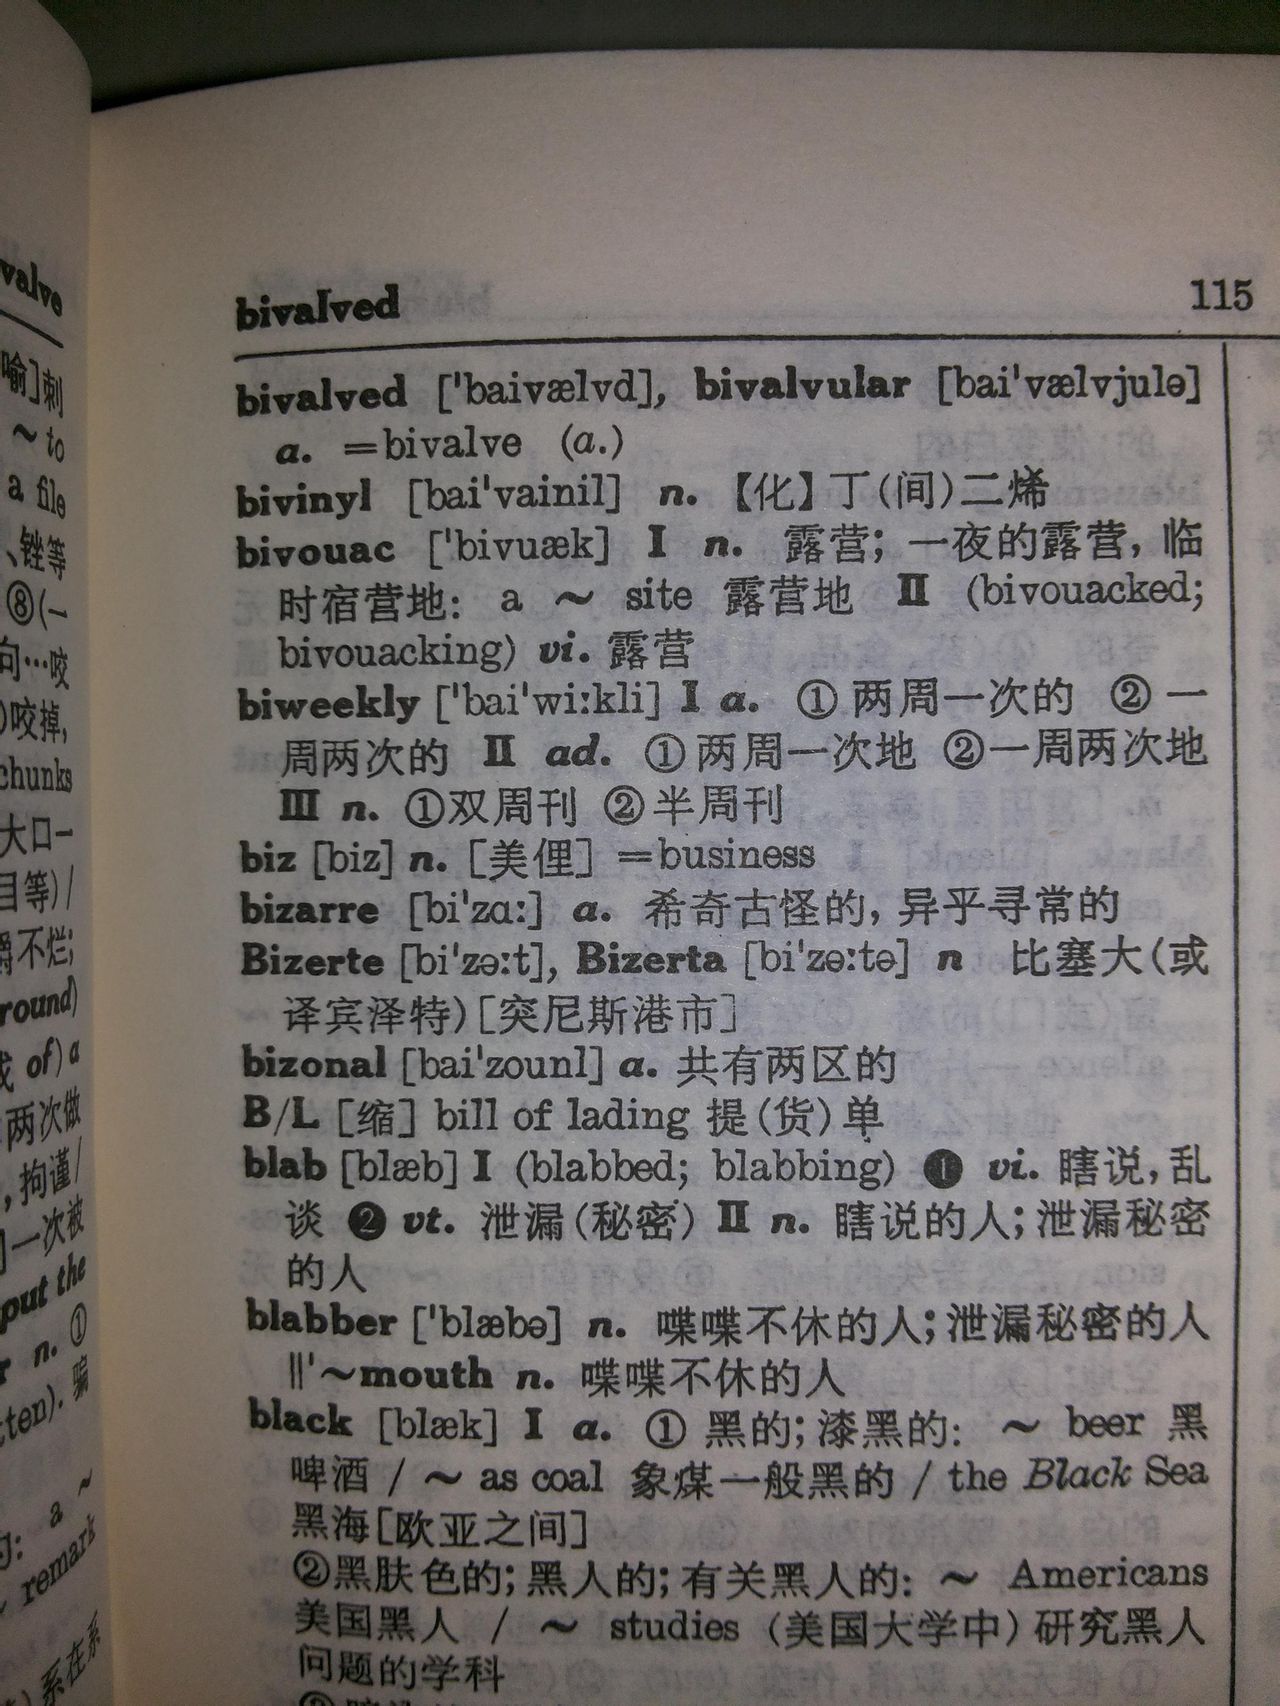 英漢詞典對biz的解釋